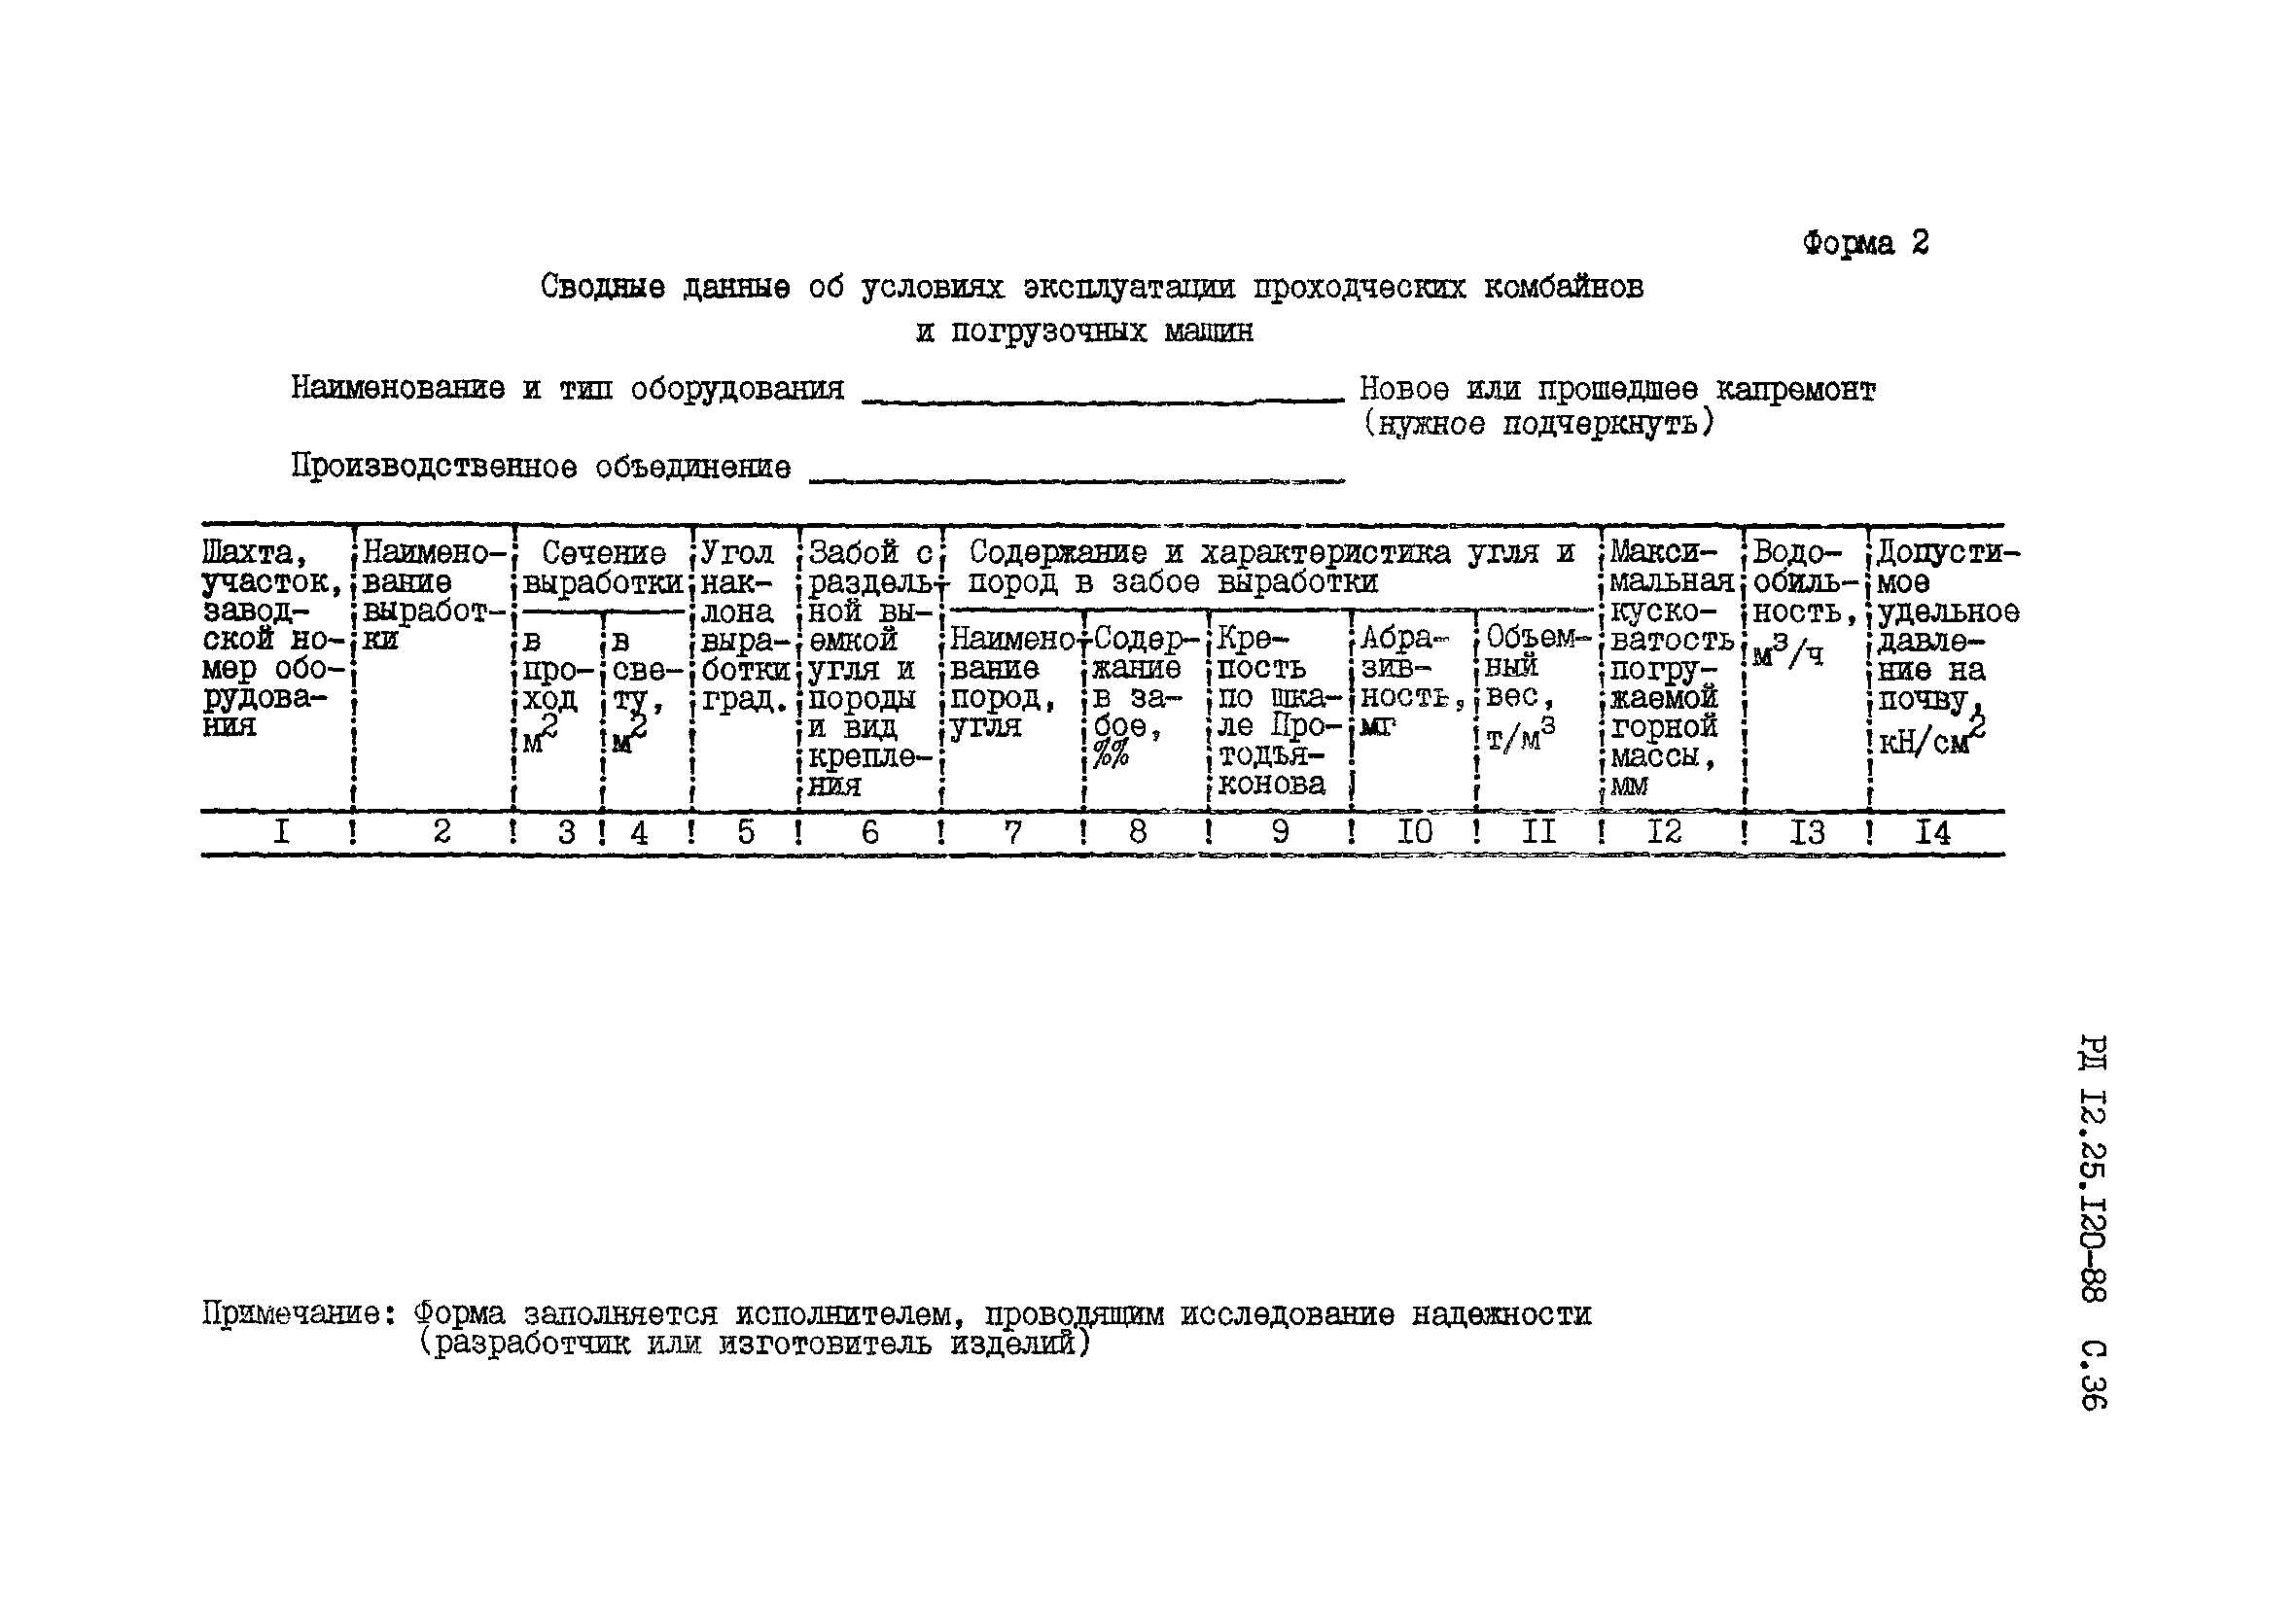 РД 12.25.120-88